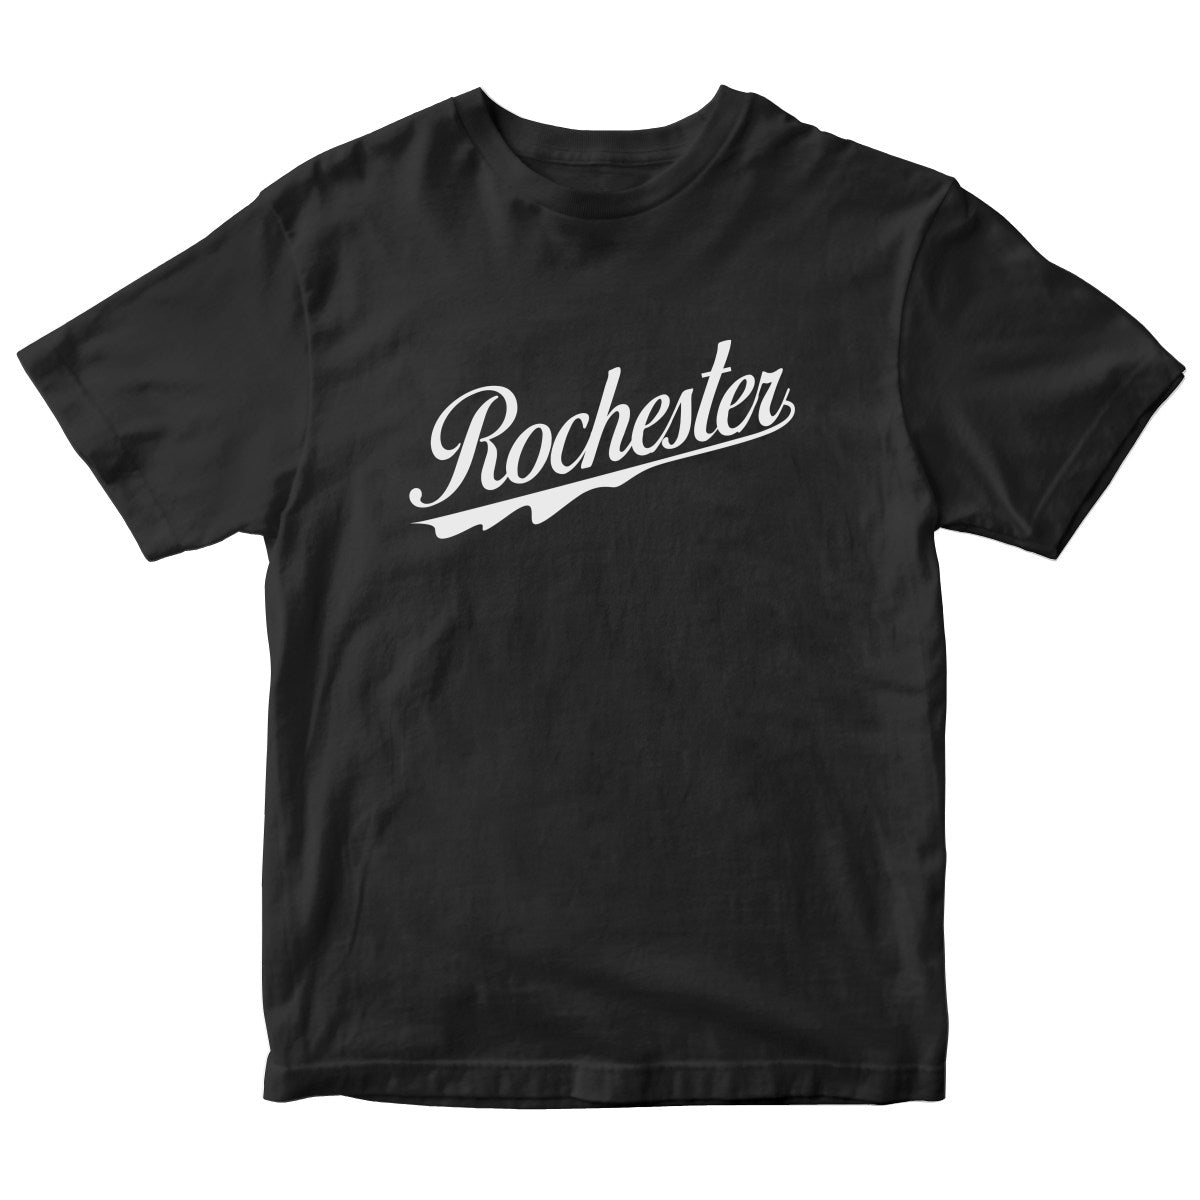 Rochester Kids T-shirt